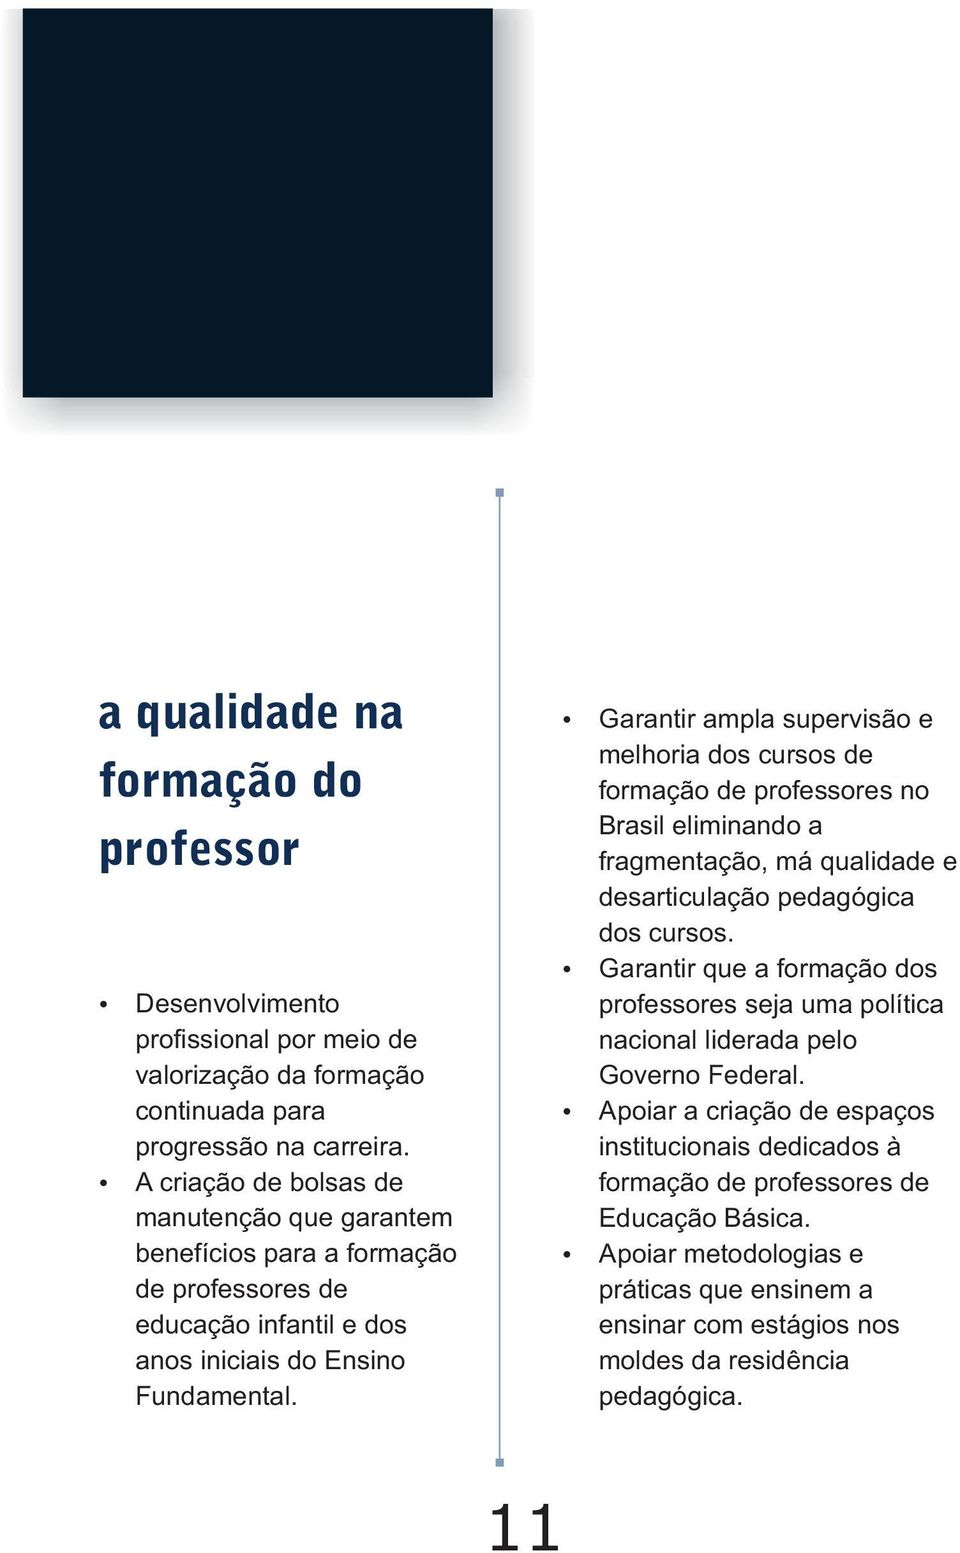 Garantir ampla supervisão e melhoria dos cursos de formação de professores no Brasil eliminando a fragmentação, má qualidade e desarticulação pedagógica dos cursos.